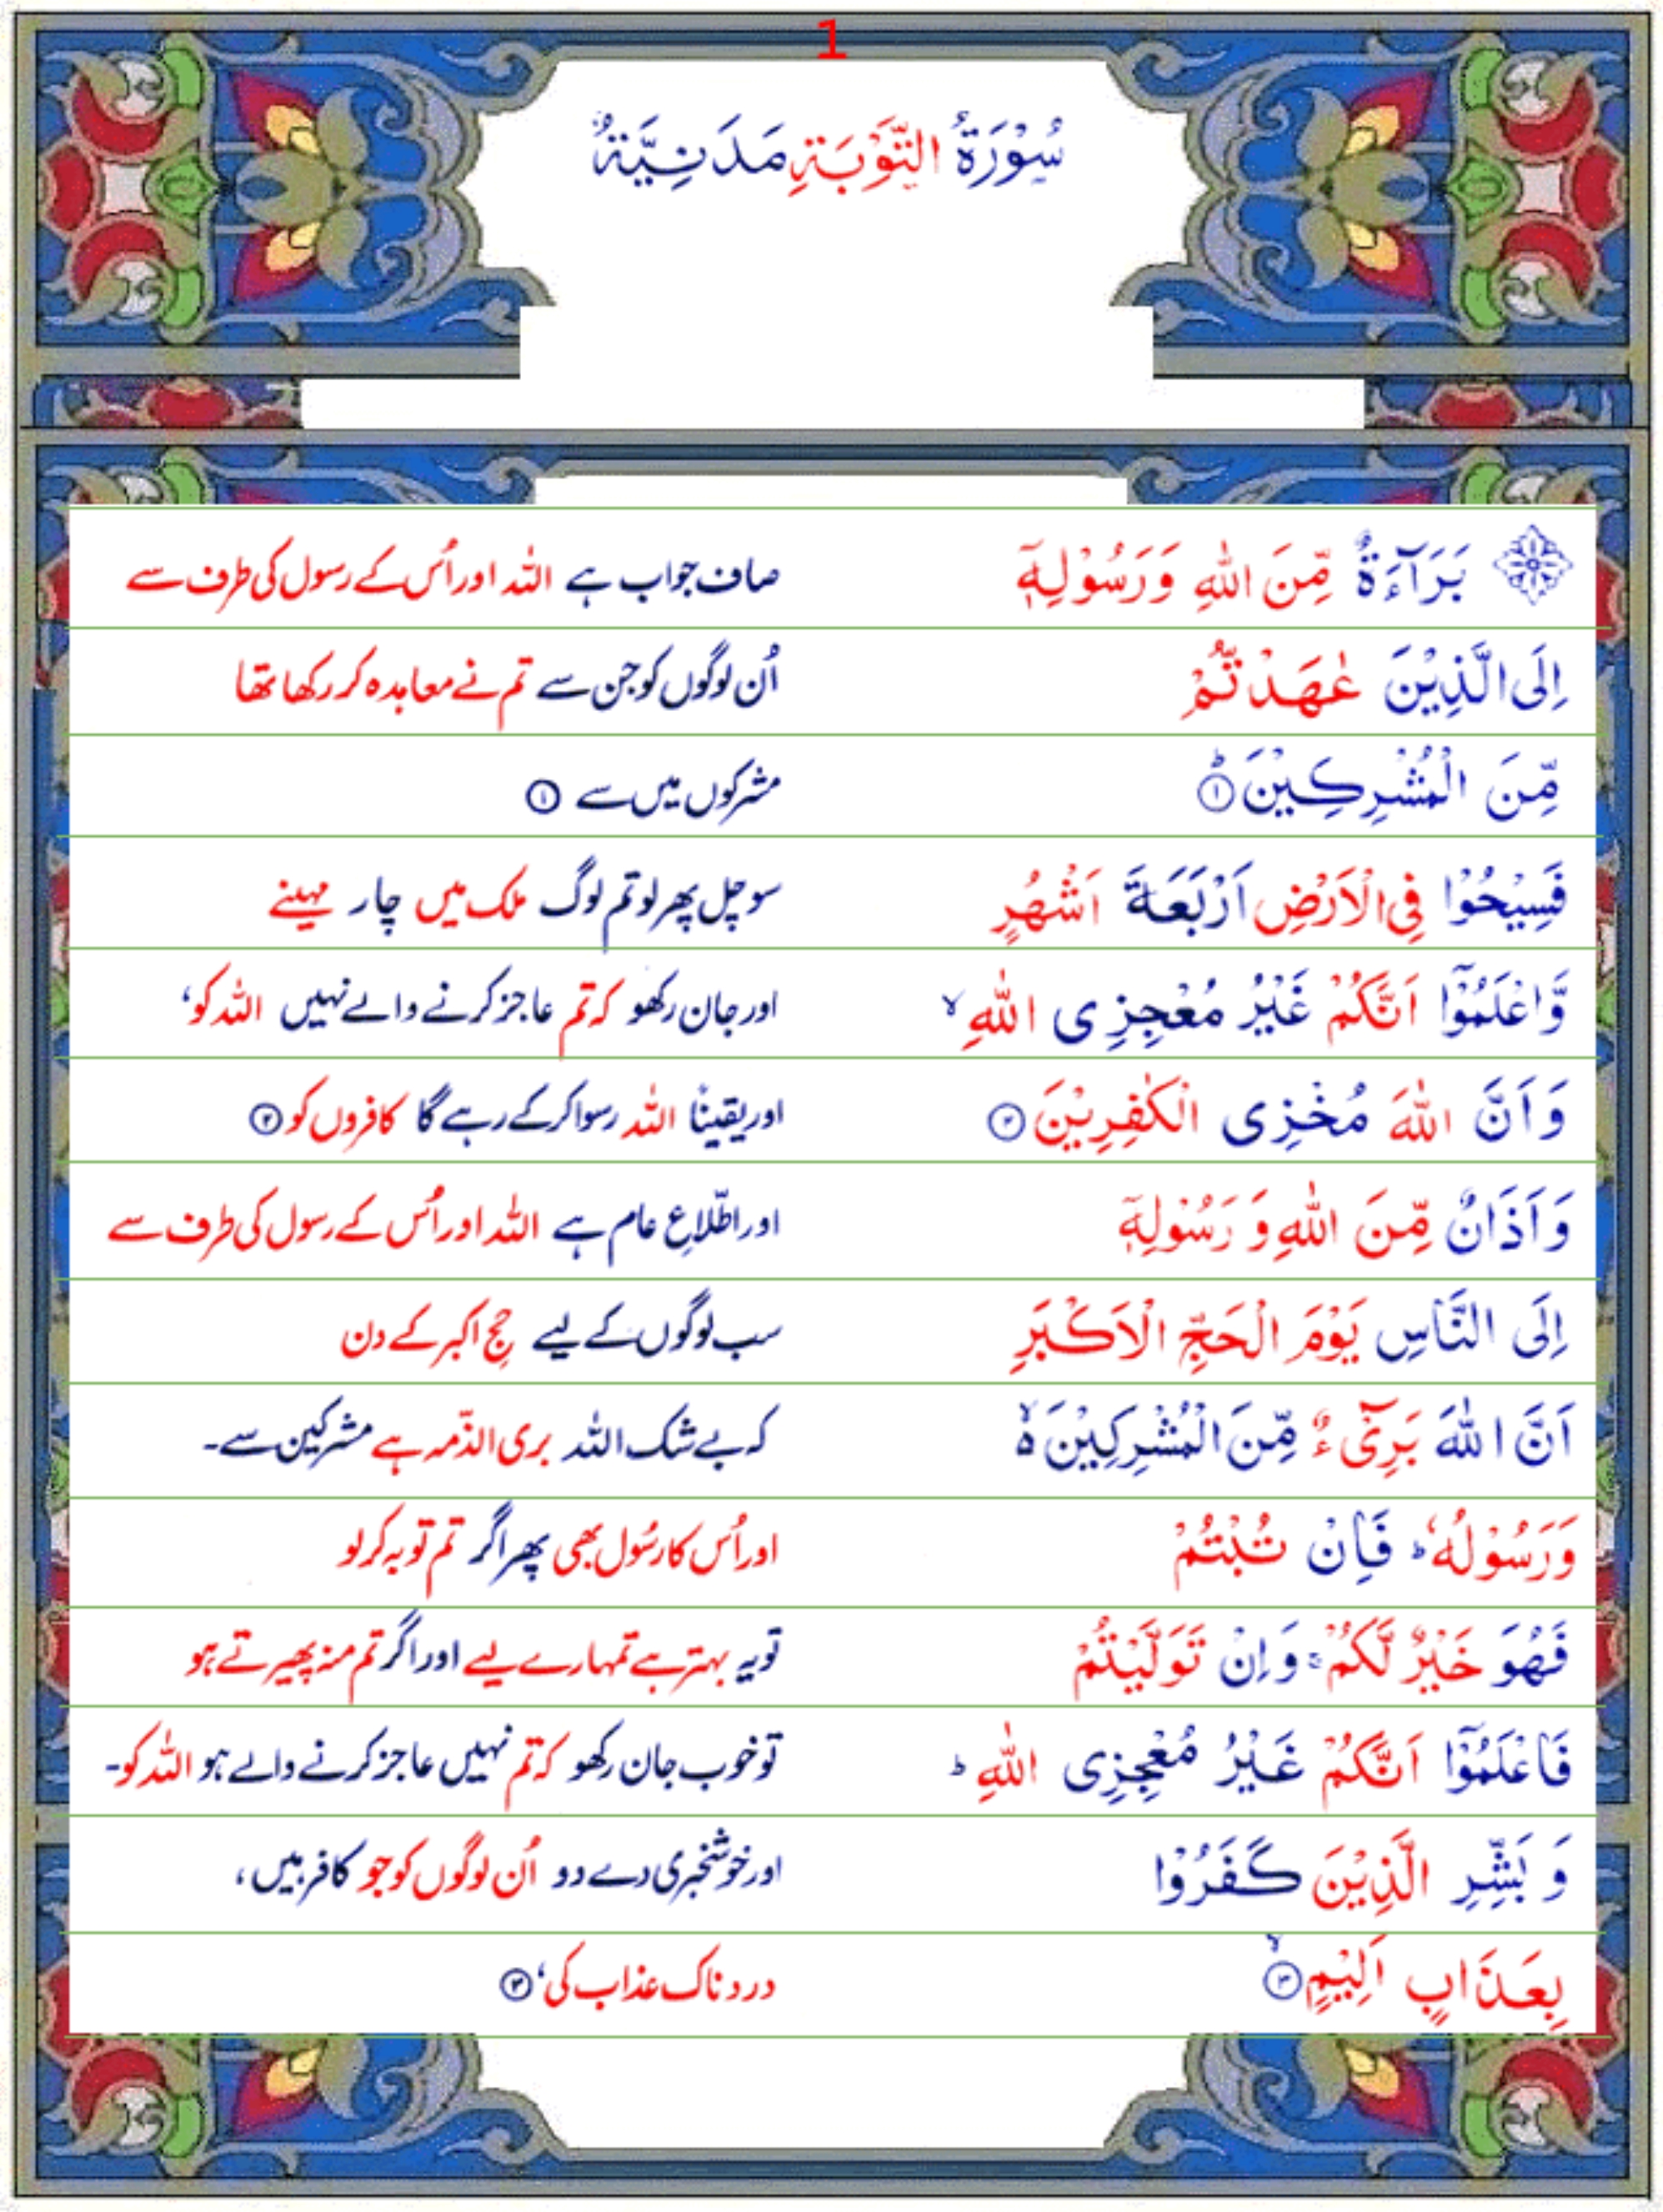 Surah At Taubah Urdu1 Quran O Sunnat